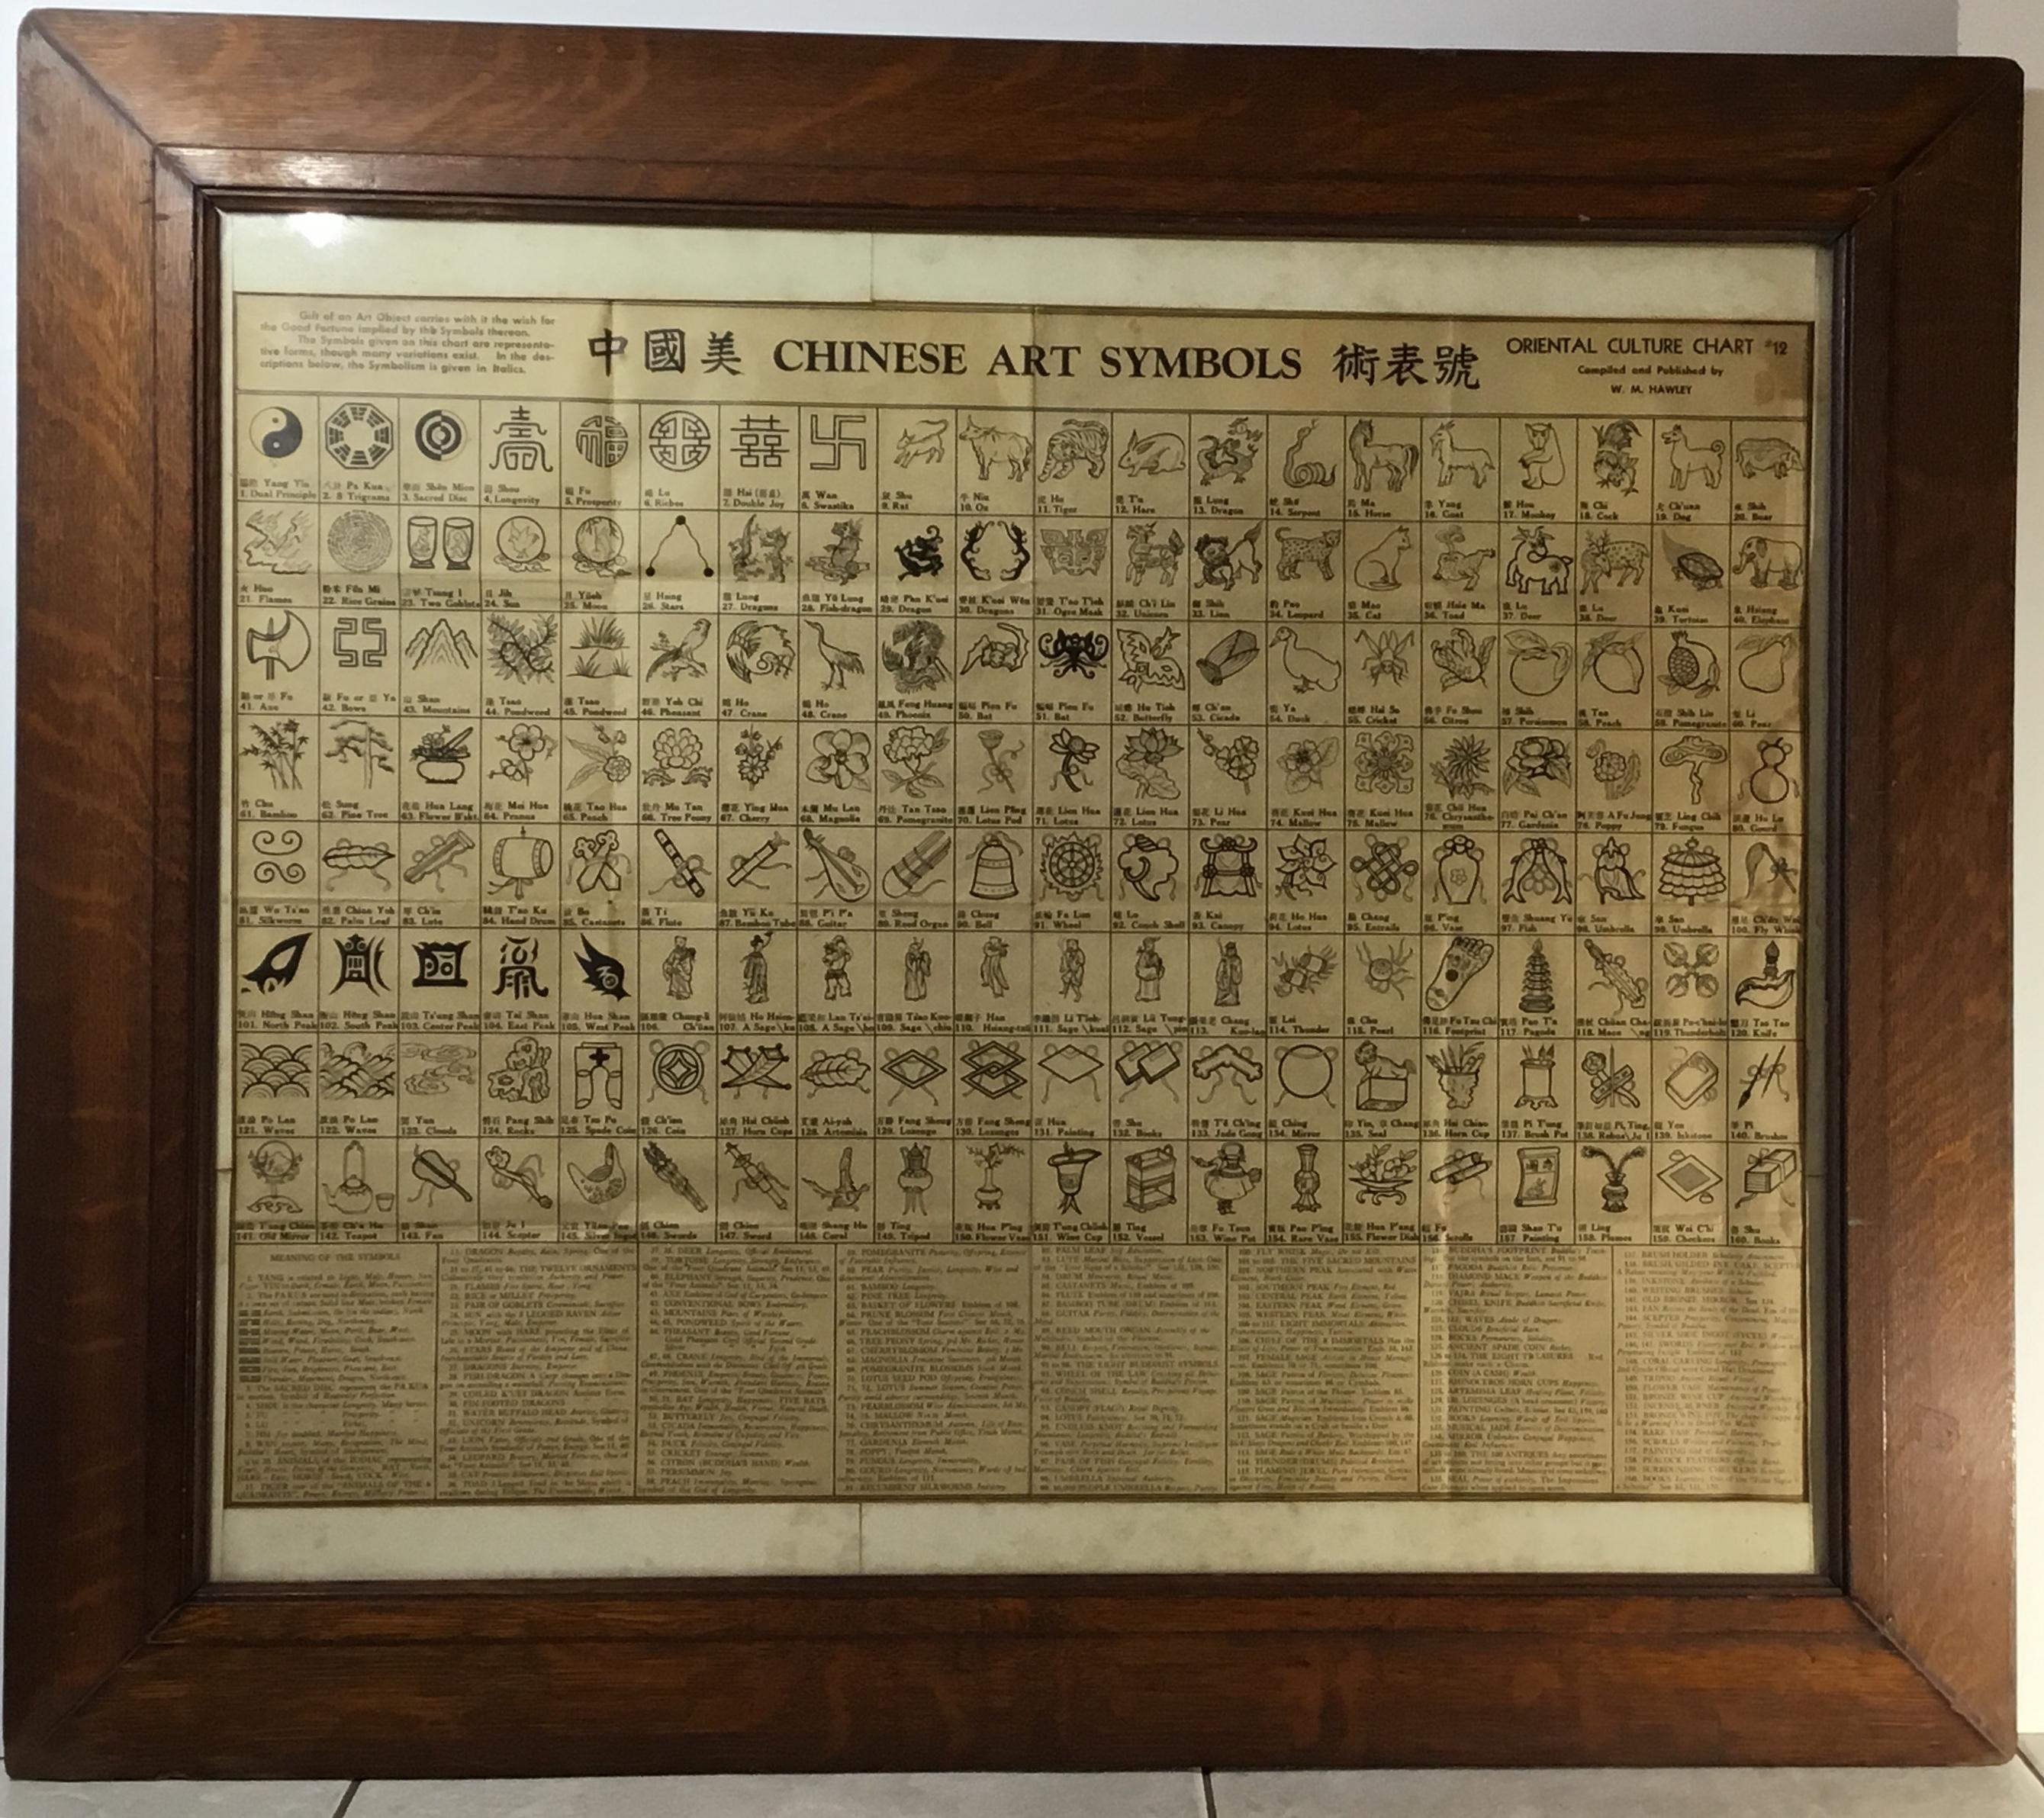 Außergewöhnlicher Wandbehang aus Tigerholzrahmen mit einzigartiger chinesischer Symboltafel von 160
Symbole, obwohl es viele Variationen gibt, und ihre Beschreibungen und Symbolik. Diese Karte wurde von dem sehr bekannten Verleger W.M.